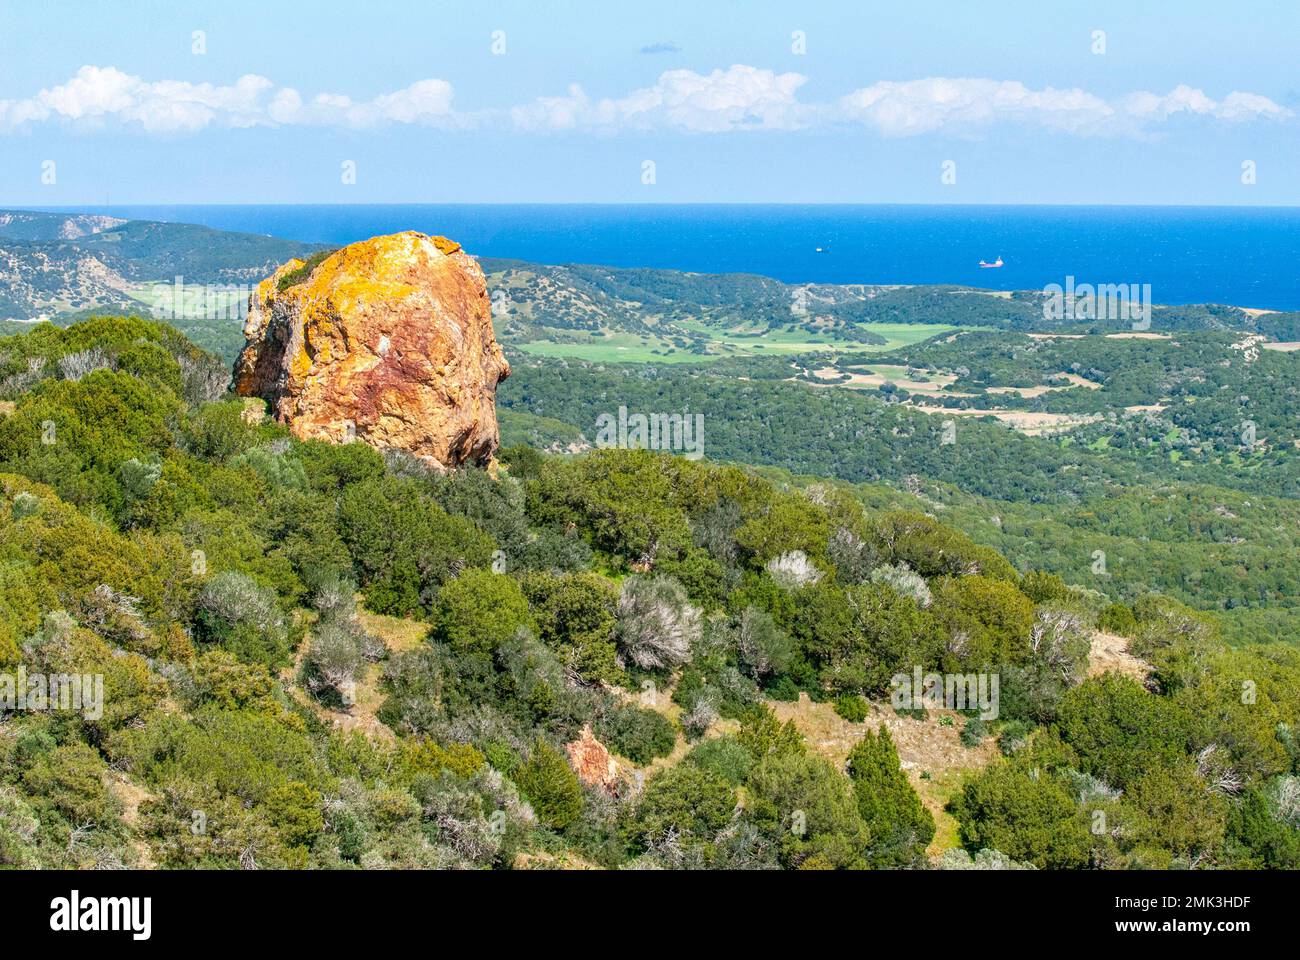 La roccia rossa/gialla si trova ai piedi delle montagne Pentadaktilos sulla penisola di Karpasia Foto Stock